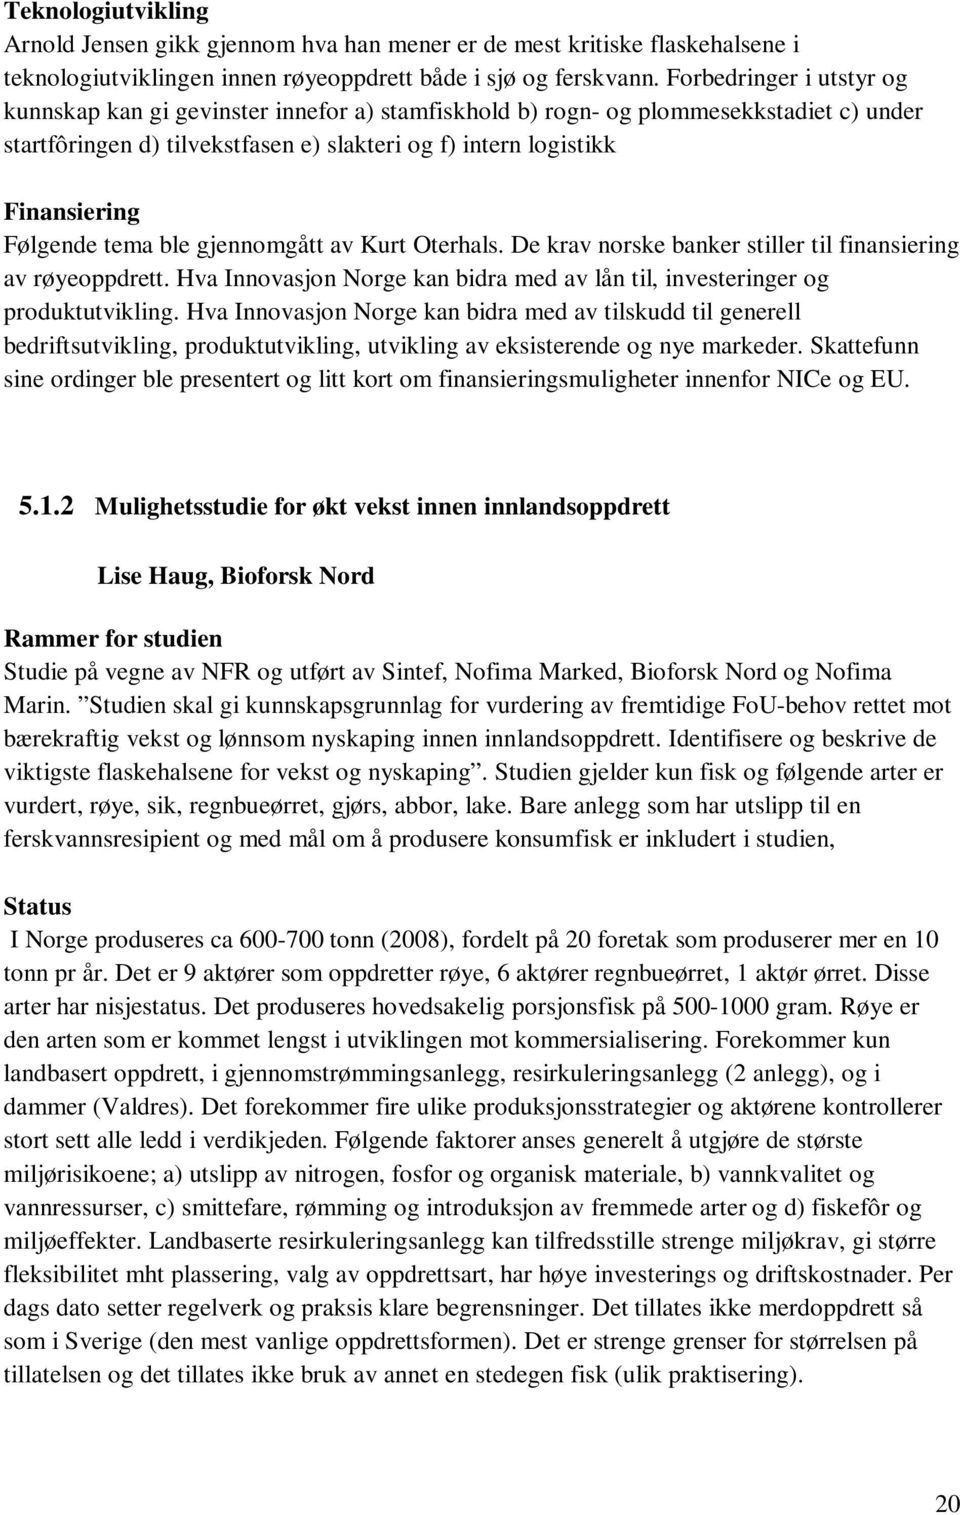 Følgende tema ble gjennomgått av Kurt Oterhals. De krav norske banker stiller til finansiering av røyeoppdrett. Hva Innovasjon Norge kan bidra med av lån til, investeringer og produktutvikling.